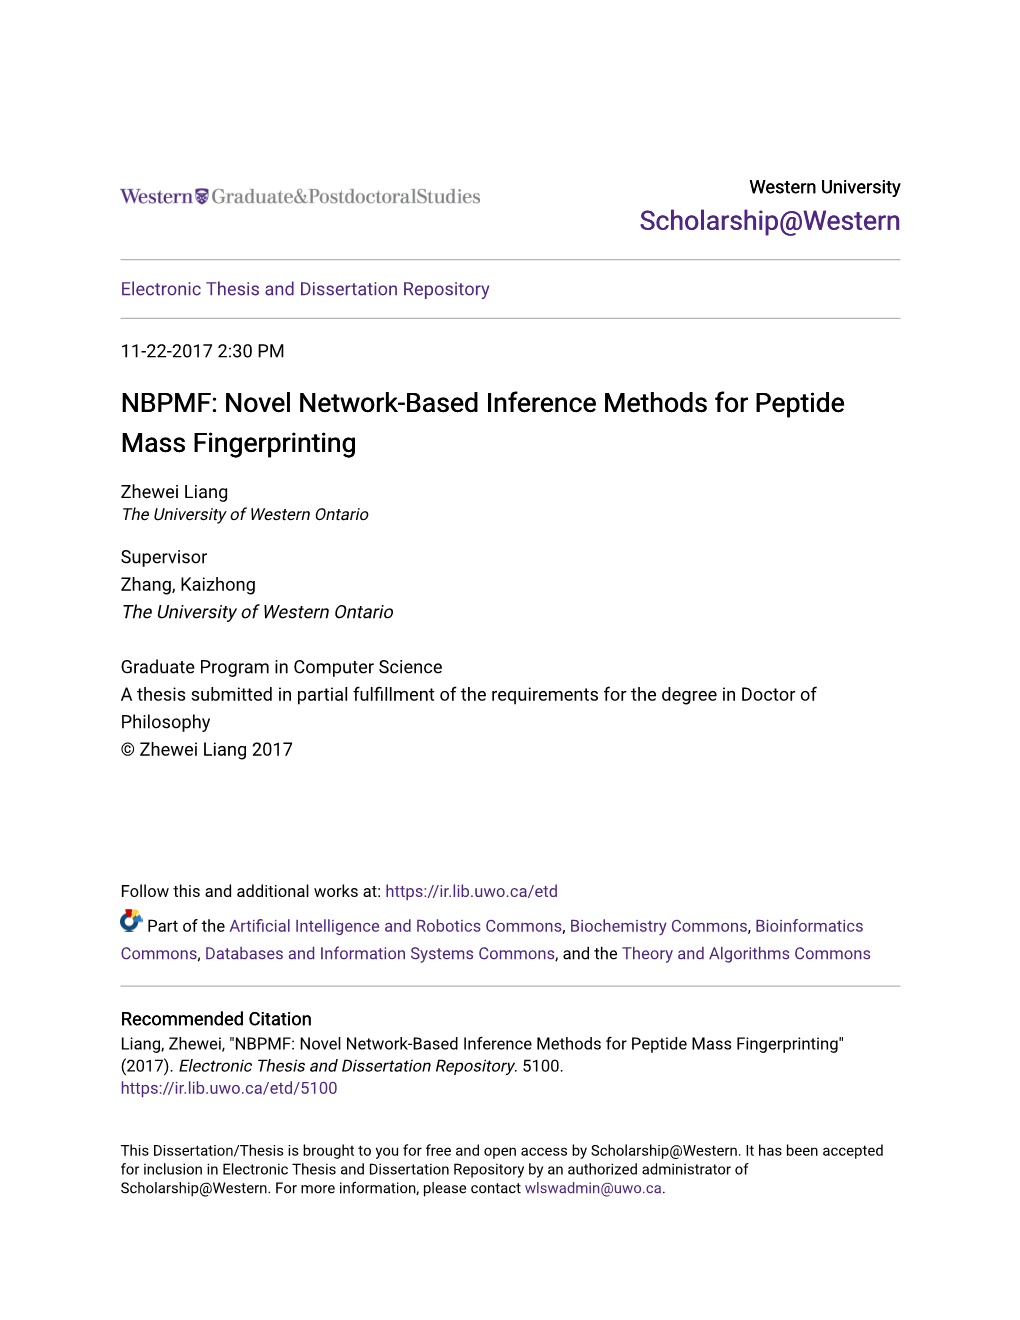 NBPMF: Novel Network-Based Inference Methods for Peptide Mass Fingerprinting